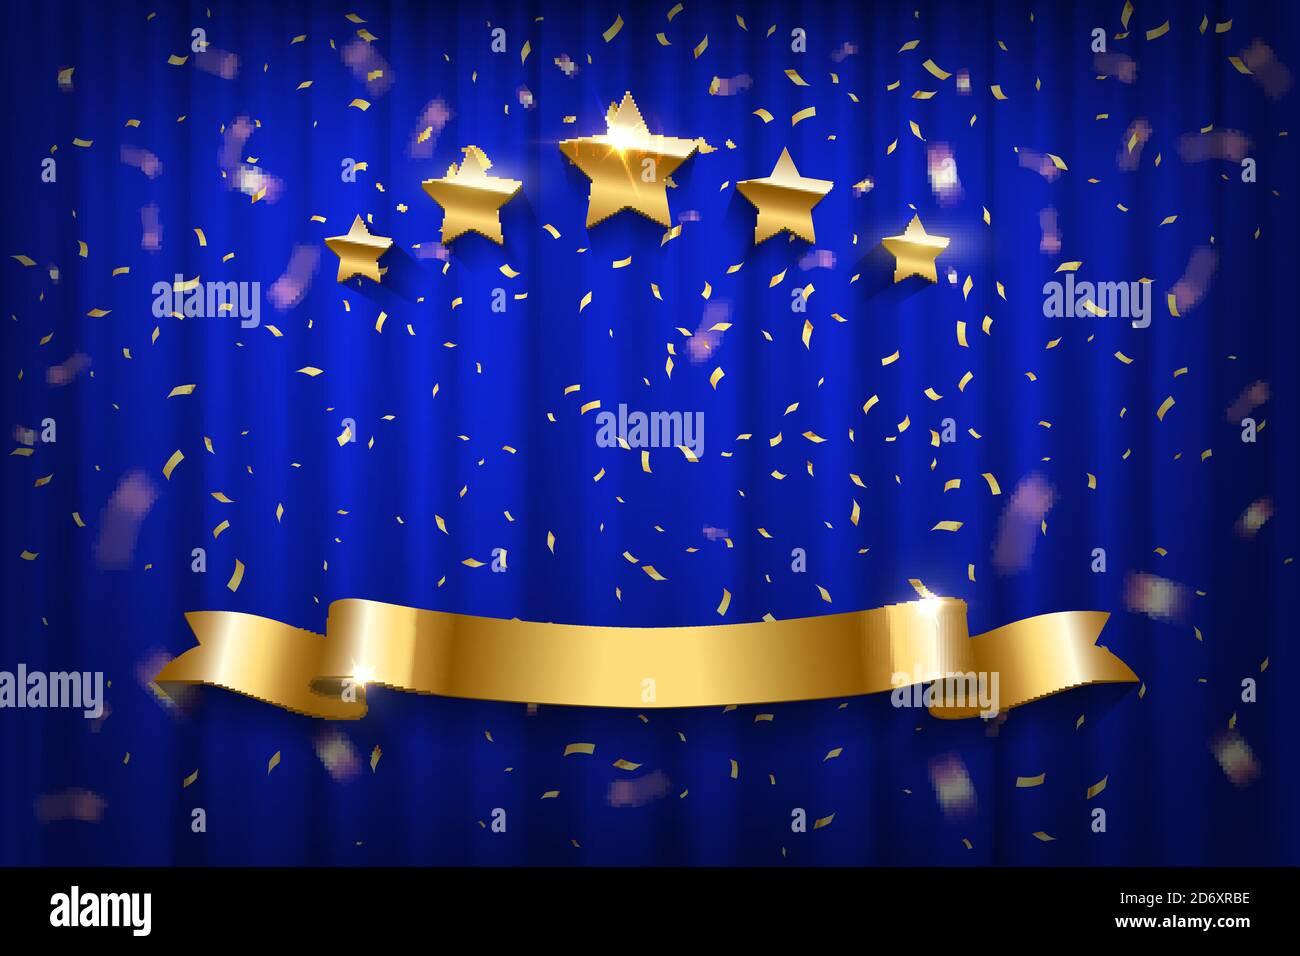 Cortina azul con confeti de oro, estrellas y cinta. Apertura del espectáculo, evento de celebración, anuncio, representación festiva ilustración vectorial. Brillando Ilustración del Vector